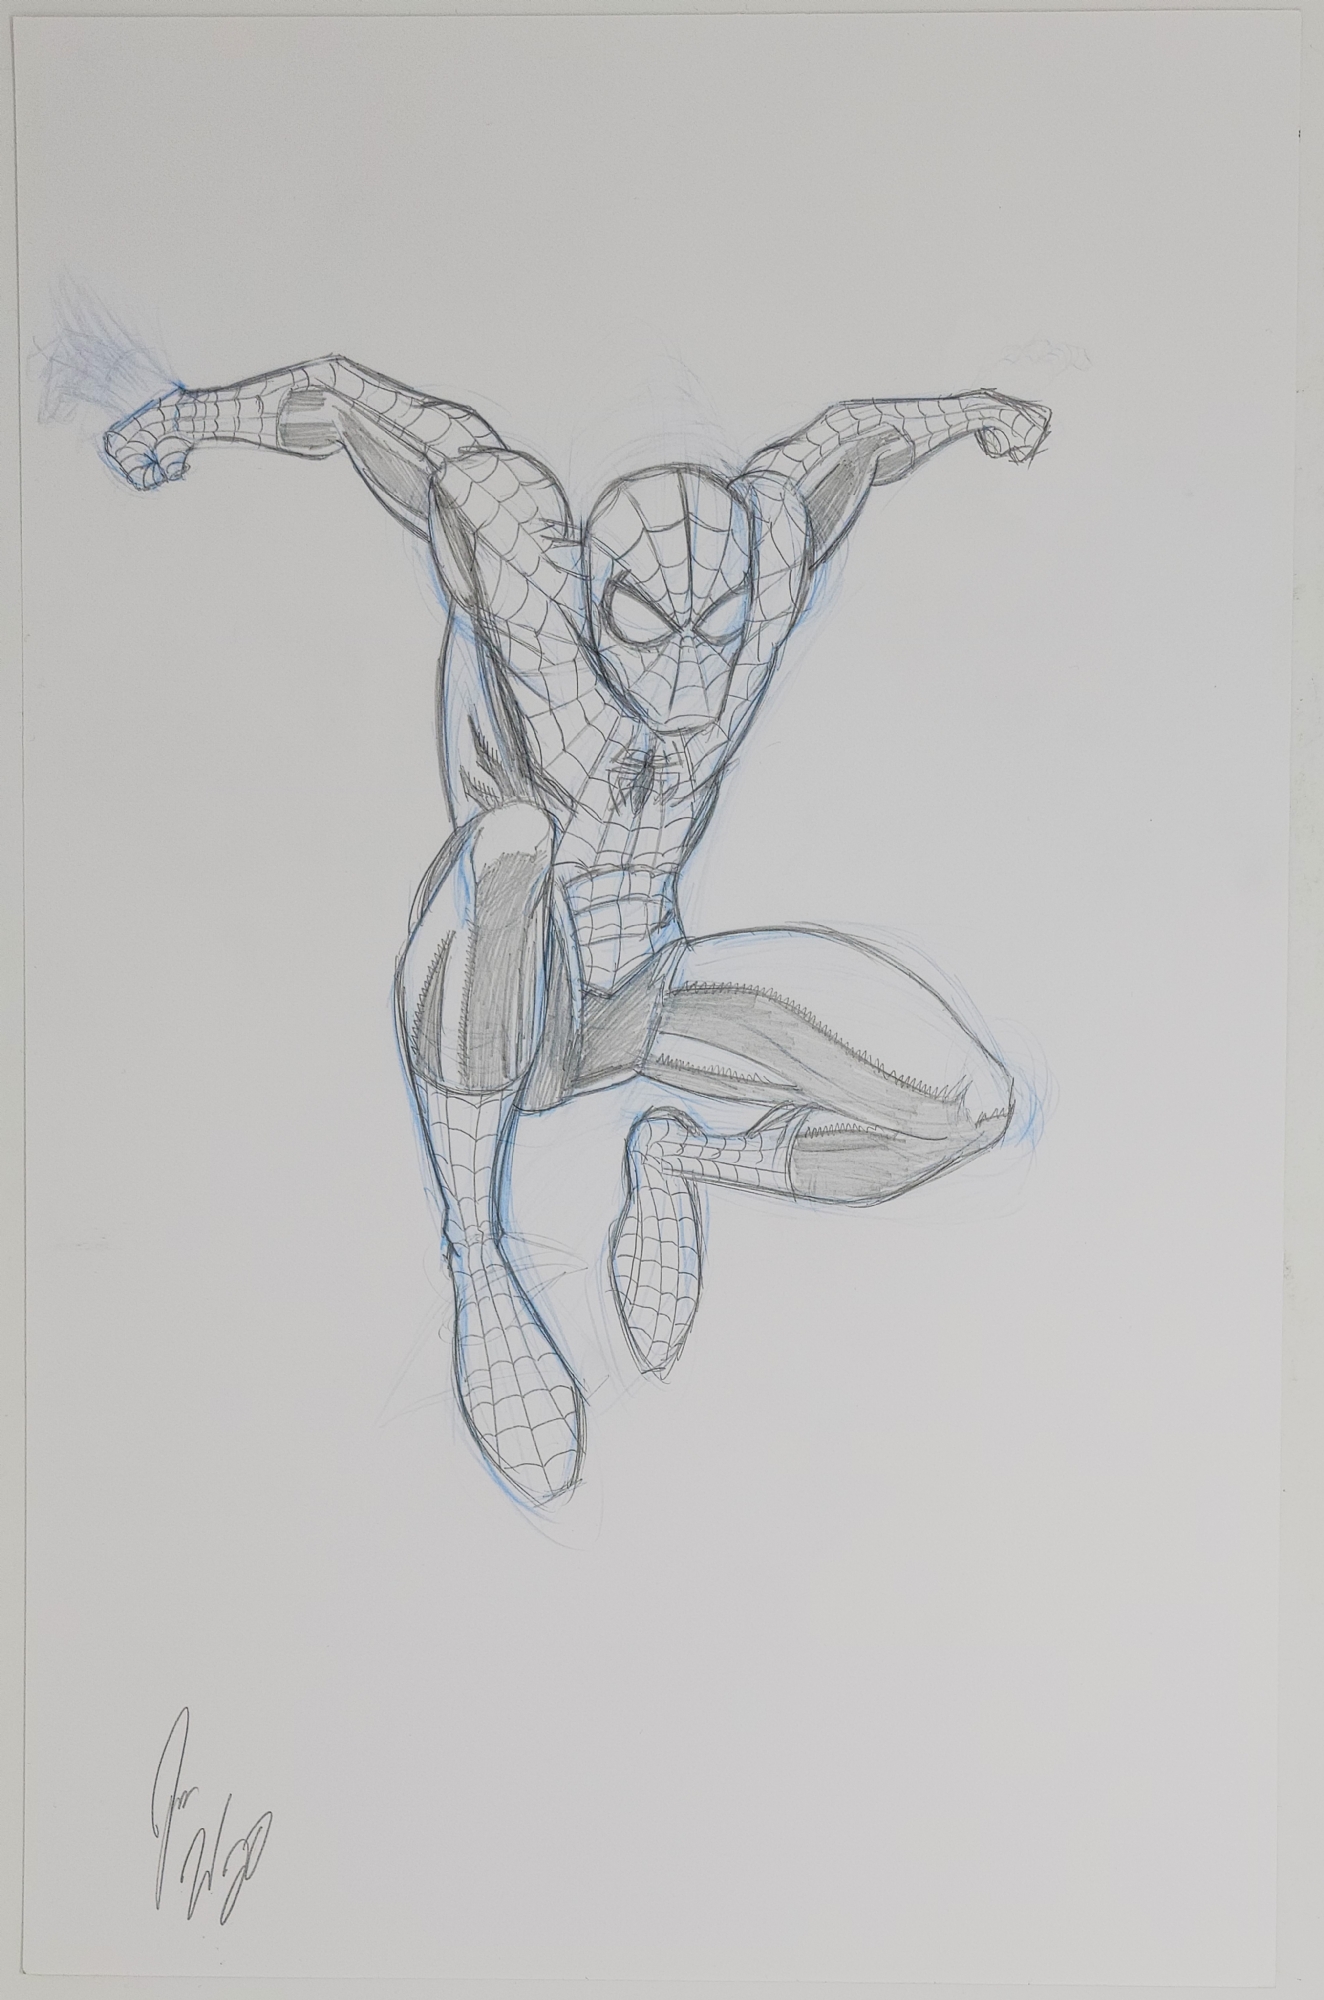 SpiderMan Sketch by ReichenArt on DeviantArt